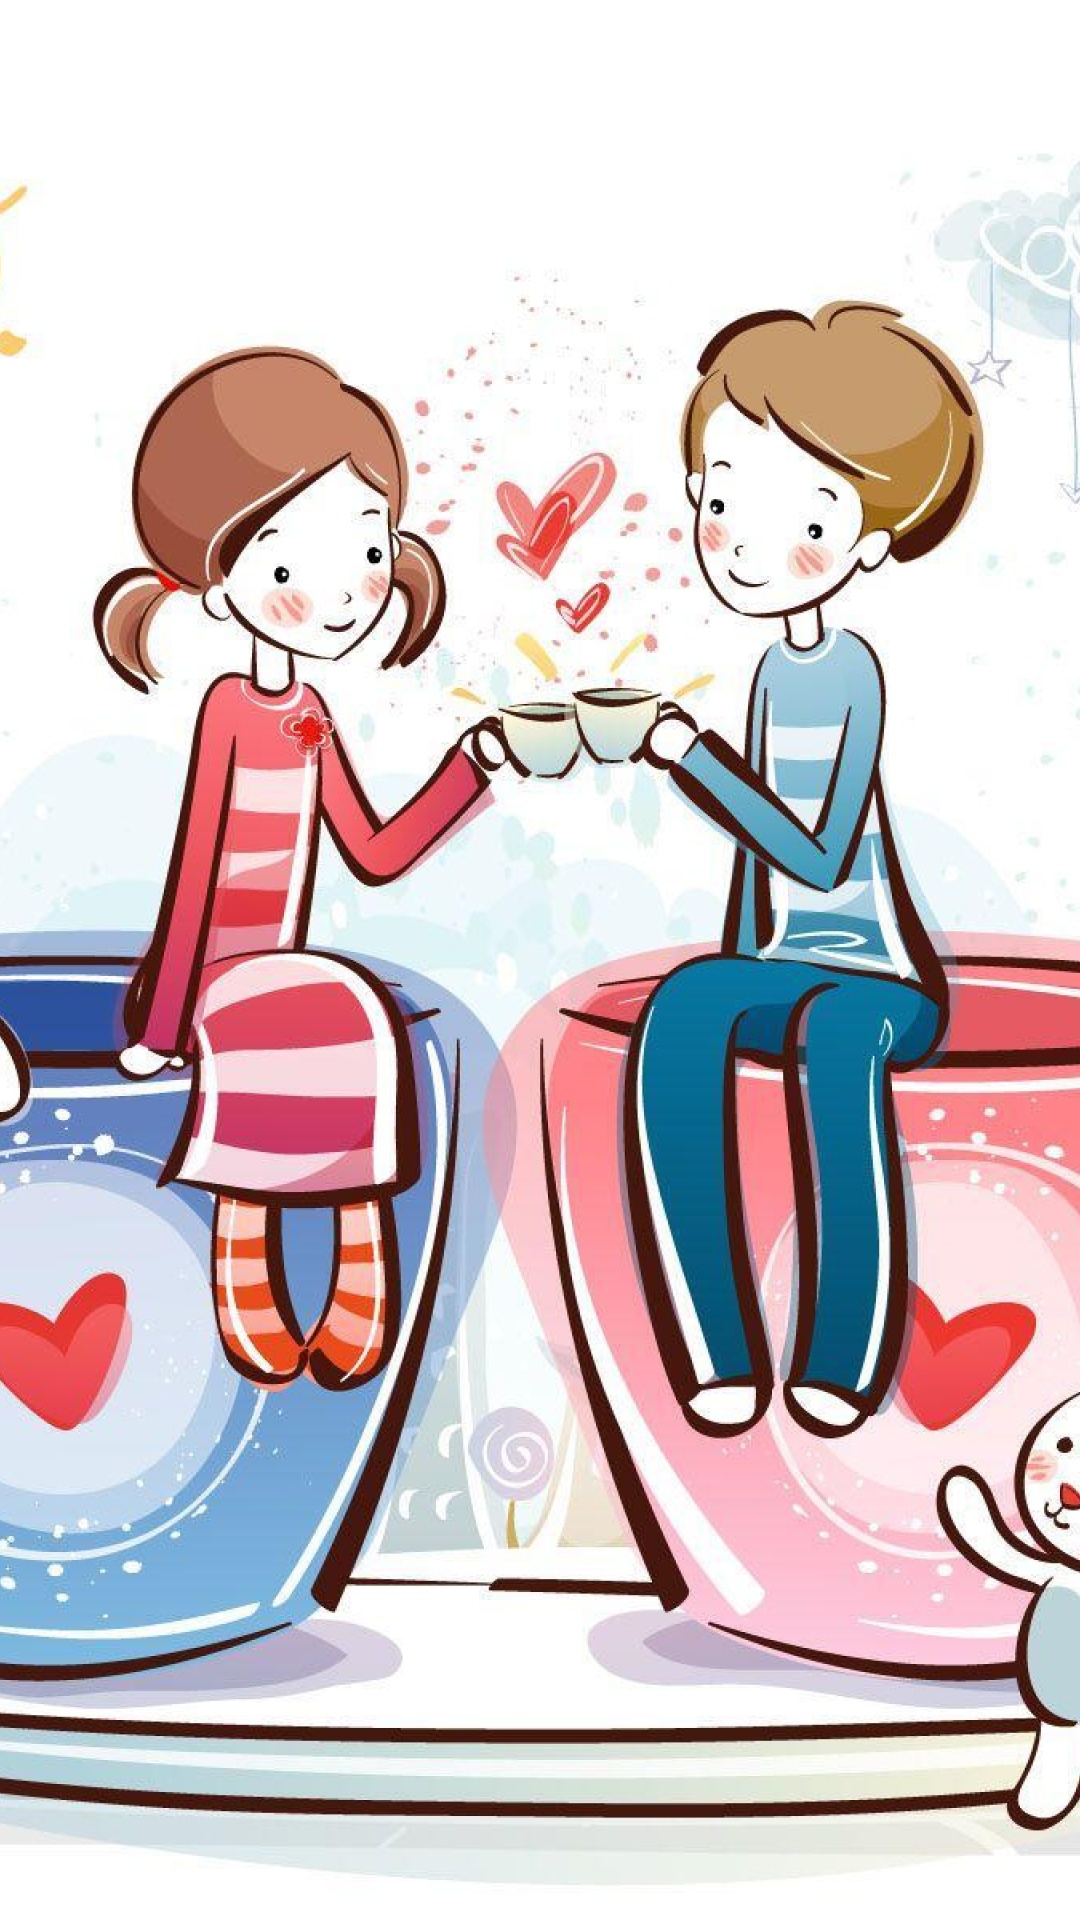 Das Valentine Cartoon Images Wallpaper 1080x1920